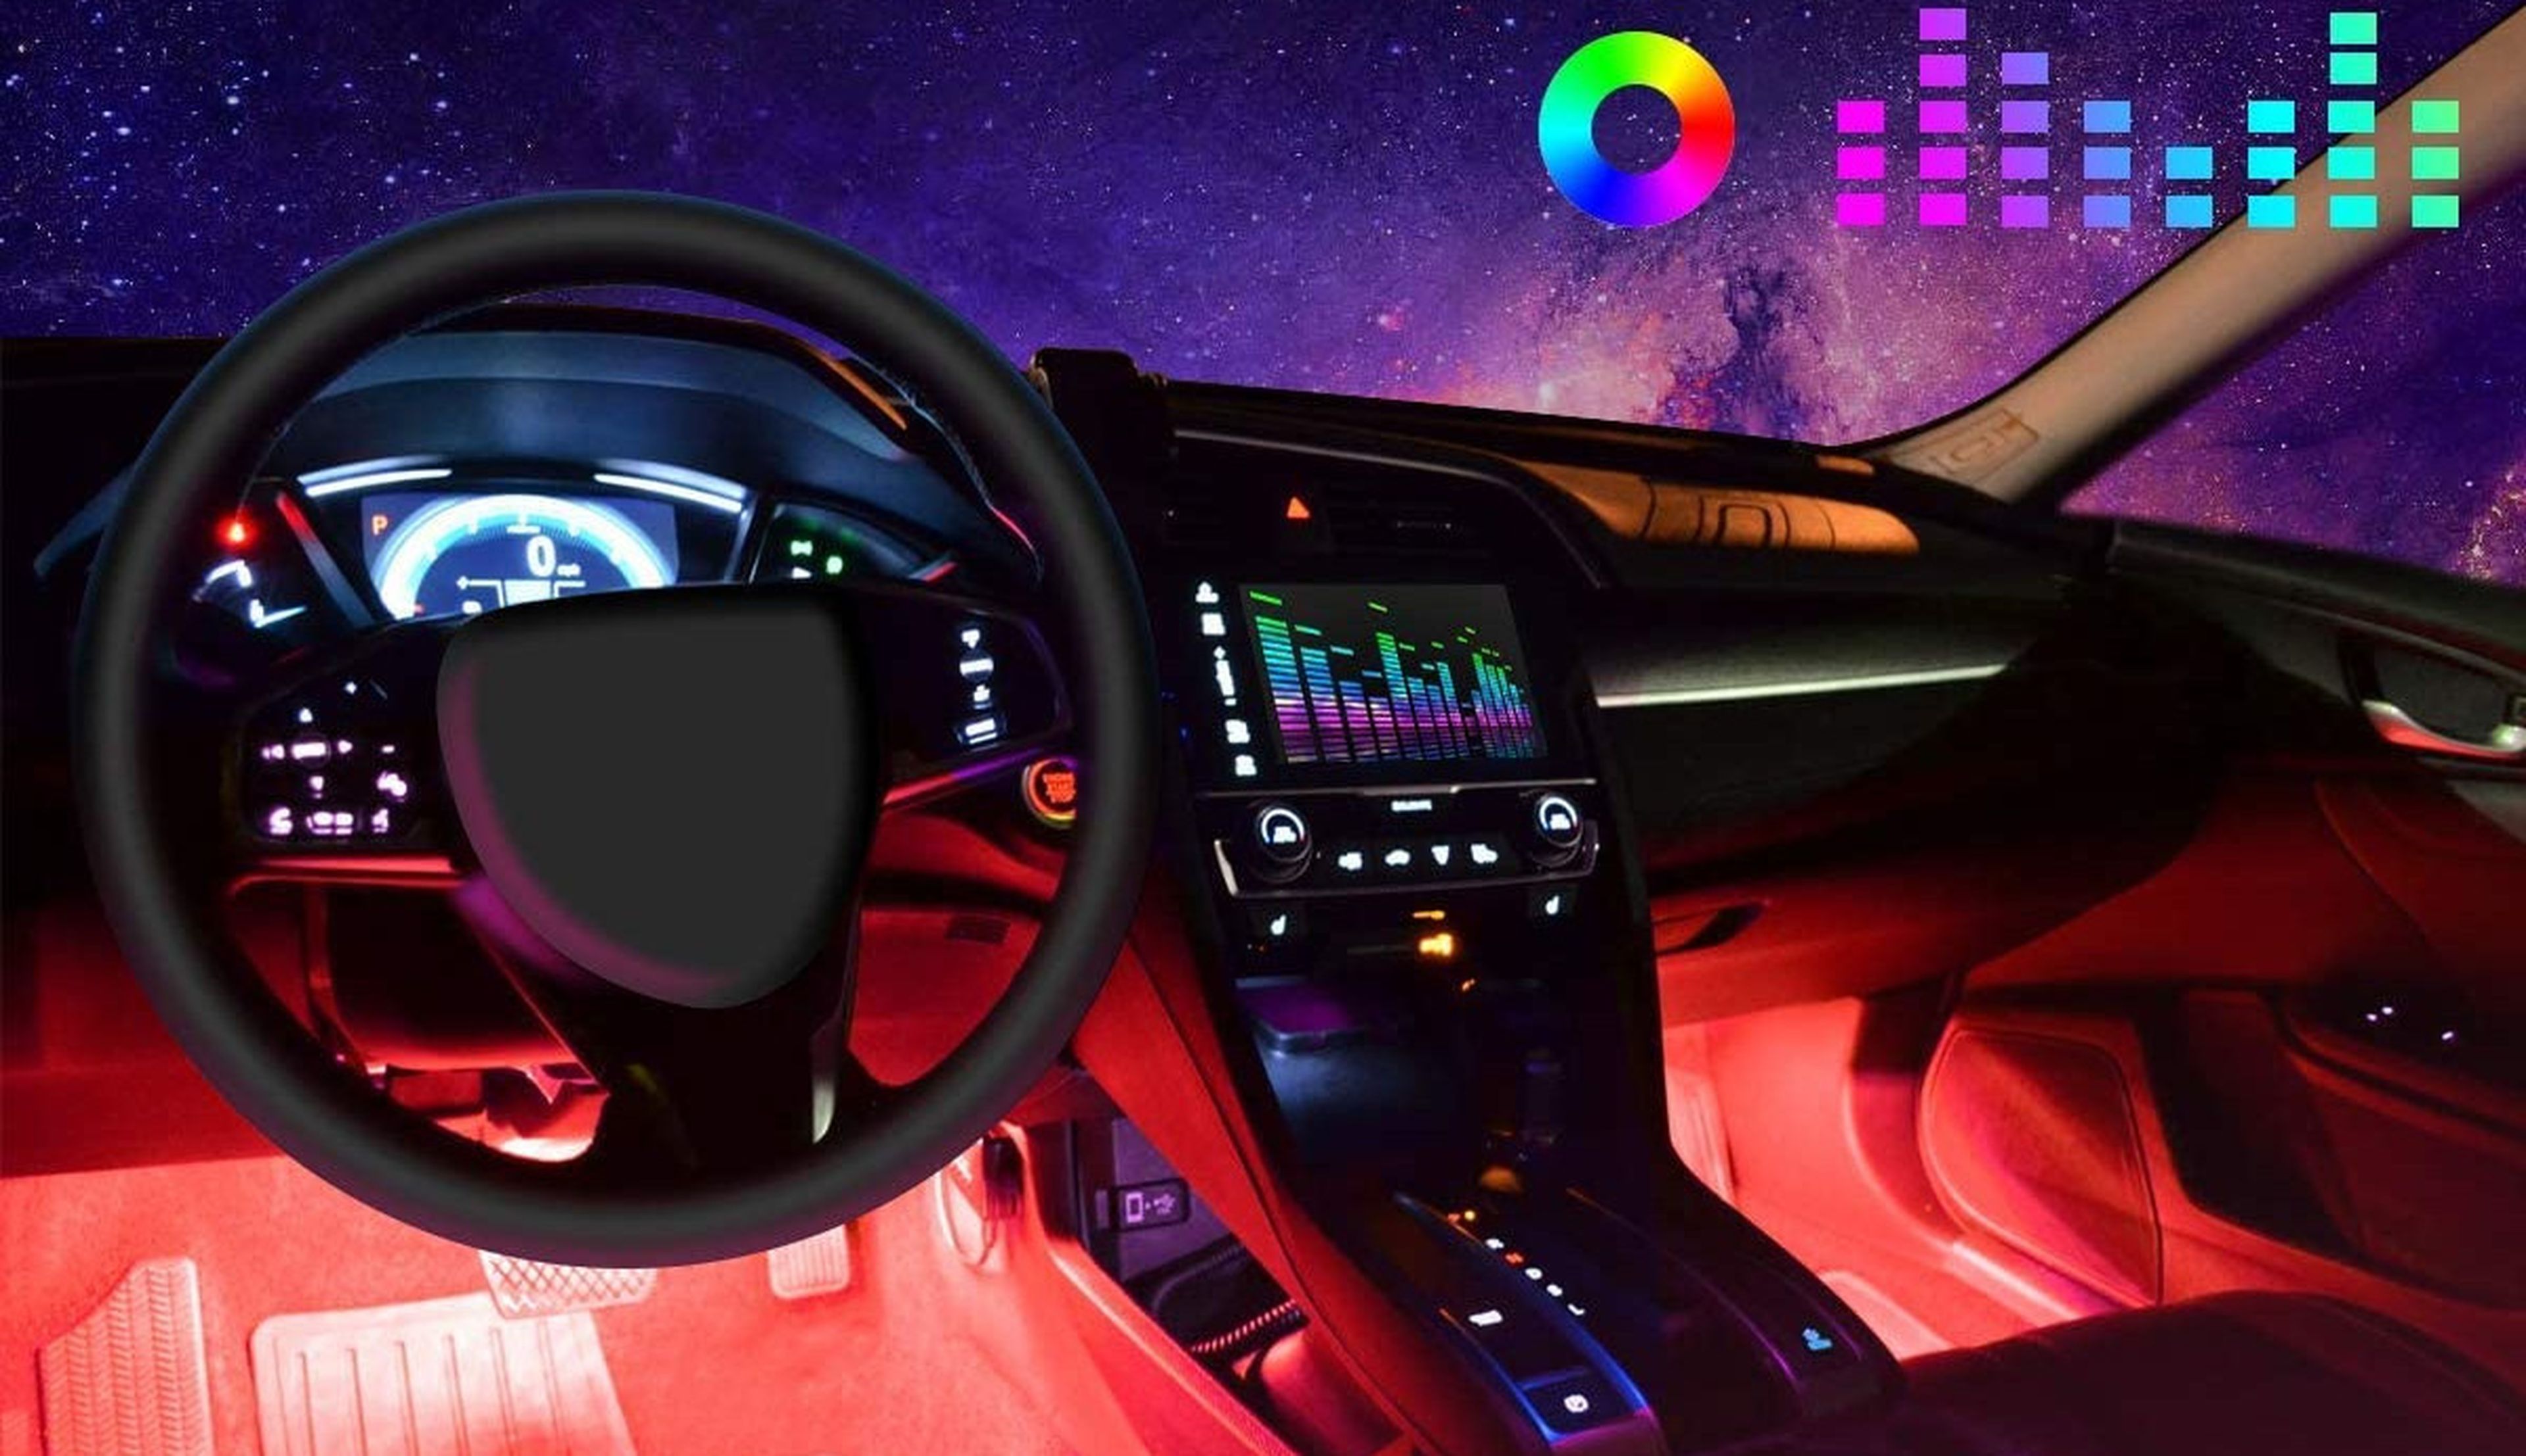 Dale luz y color a tu coche con estas tiras LED multicolor que